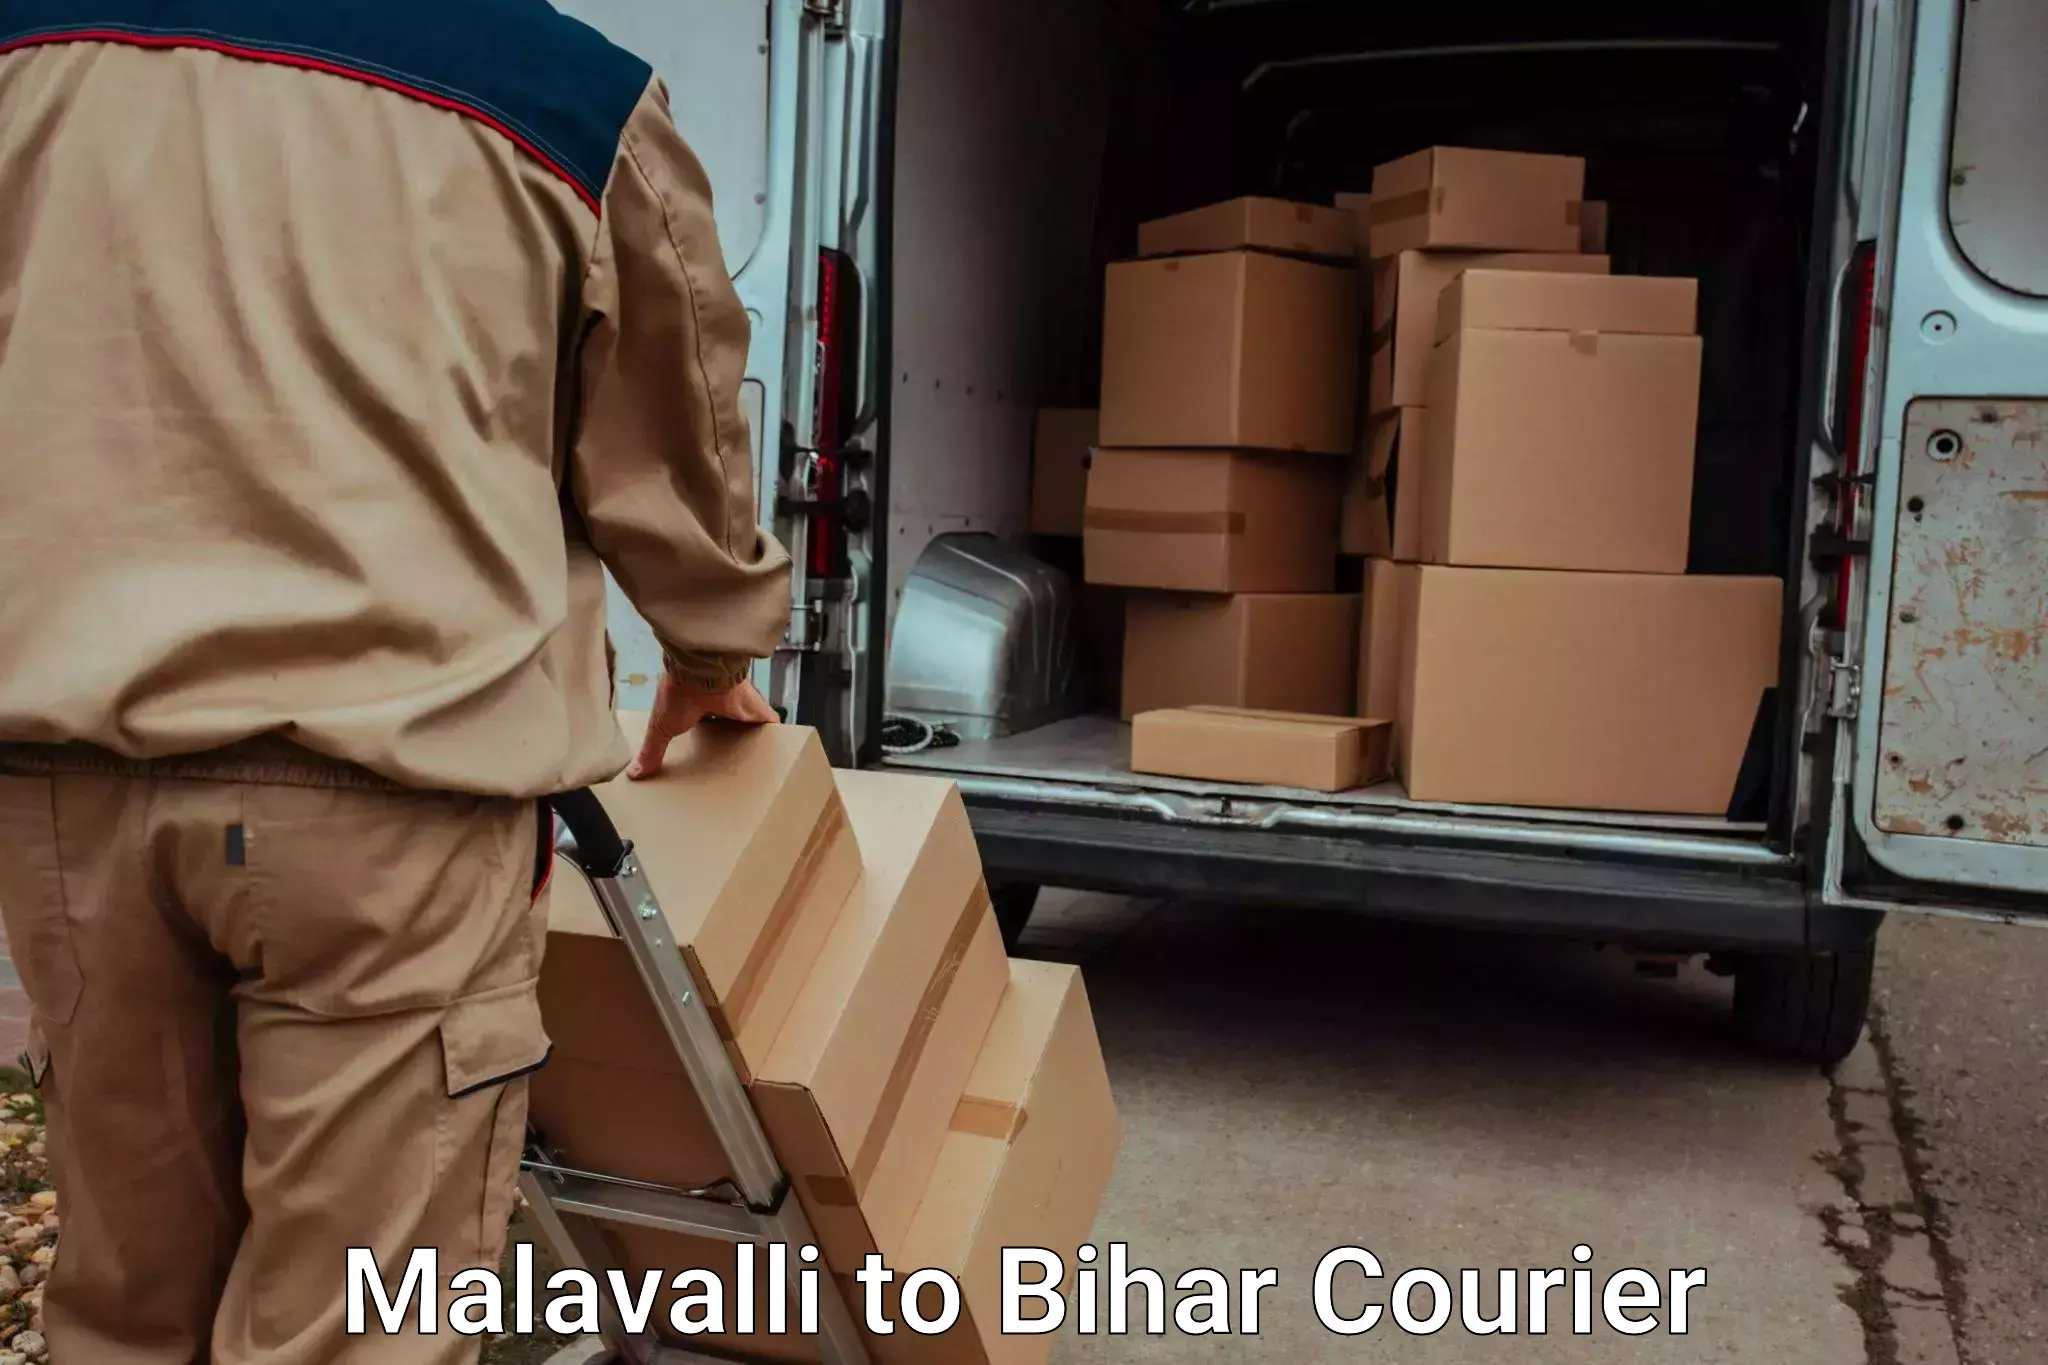 Door to door luggage delivery Malavalli to Biraul